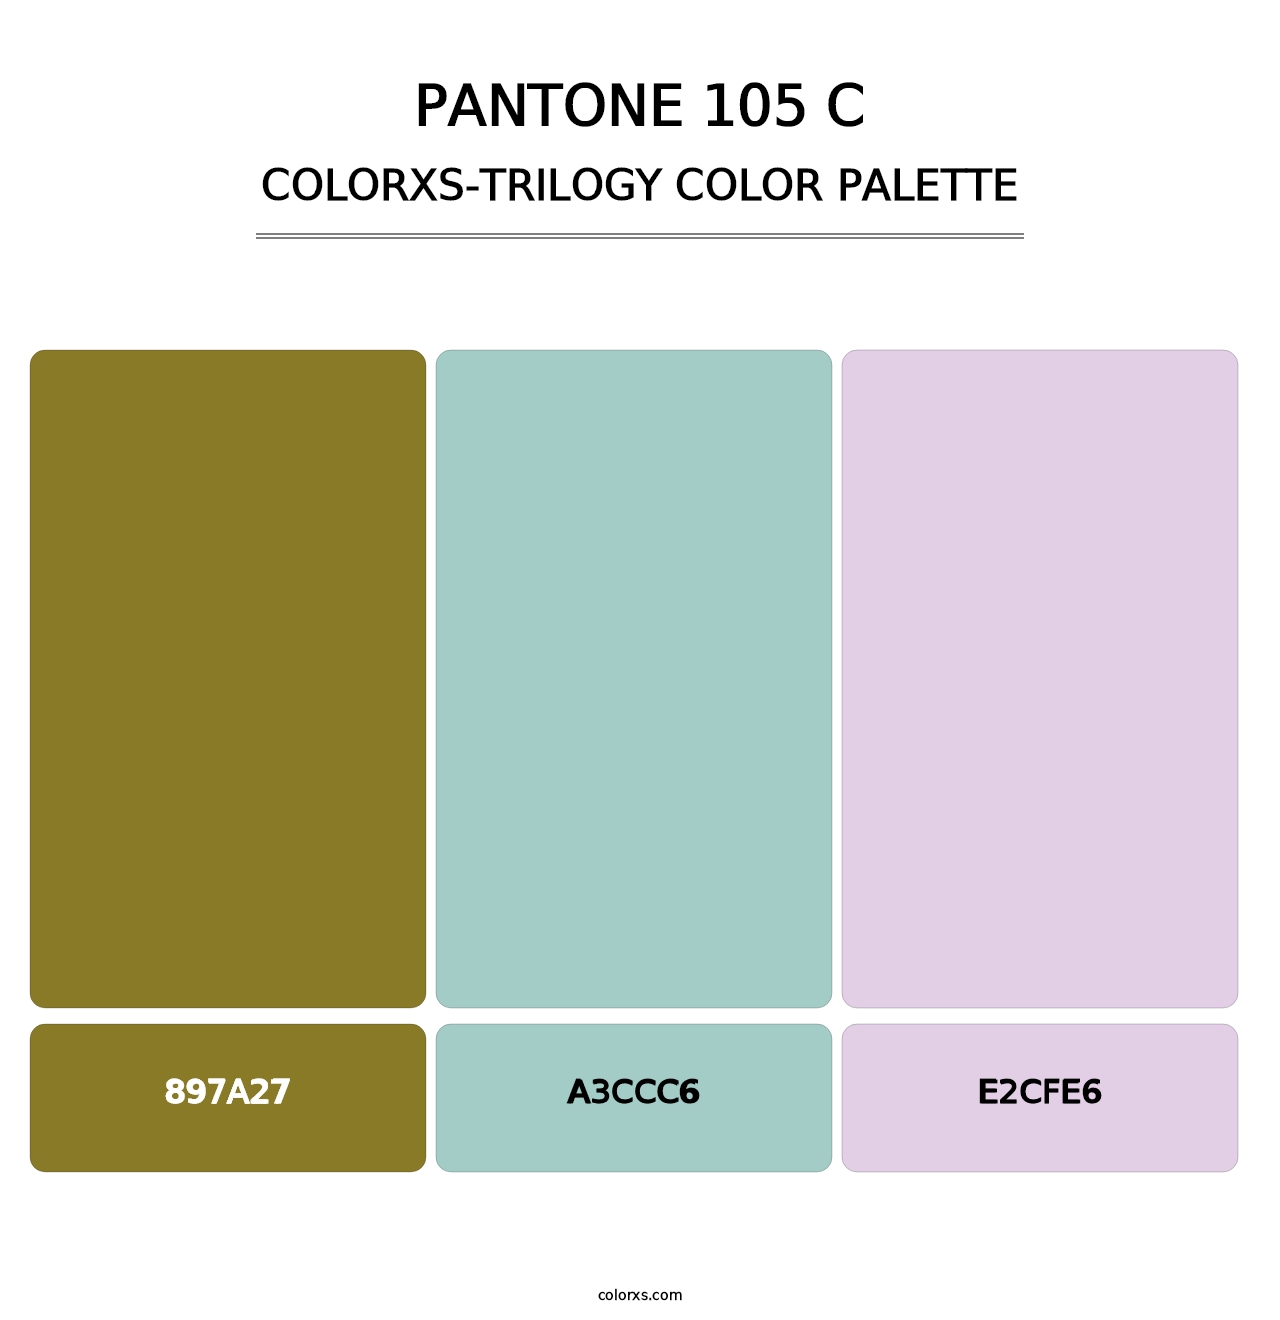 PANTONE 105 C - Colorxs Trilogy Palette